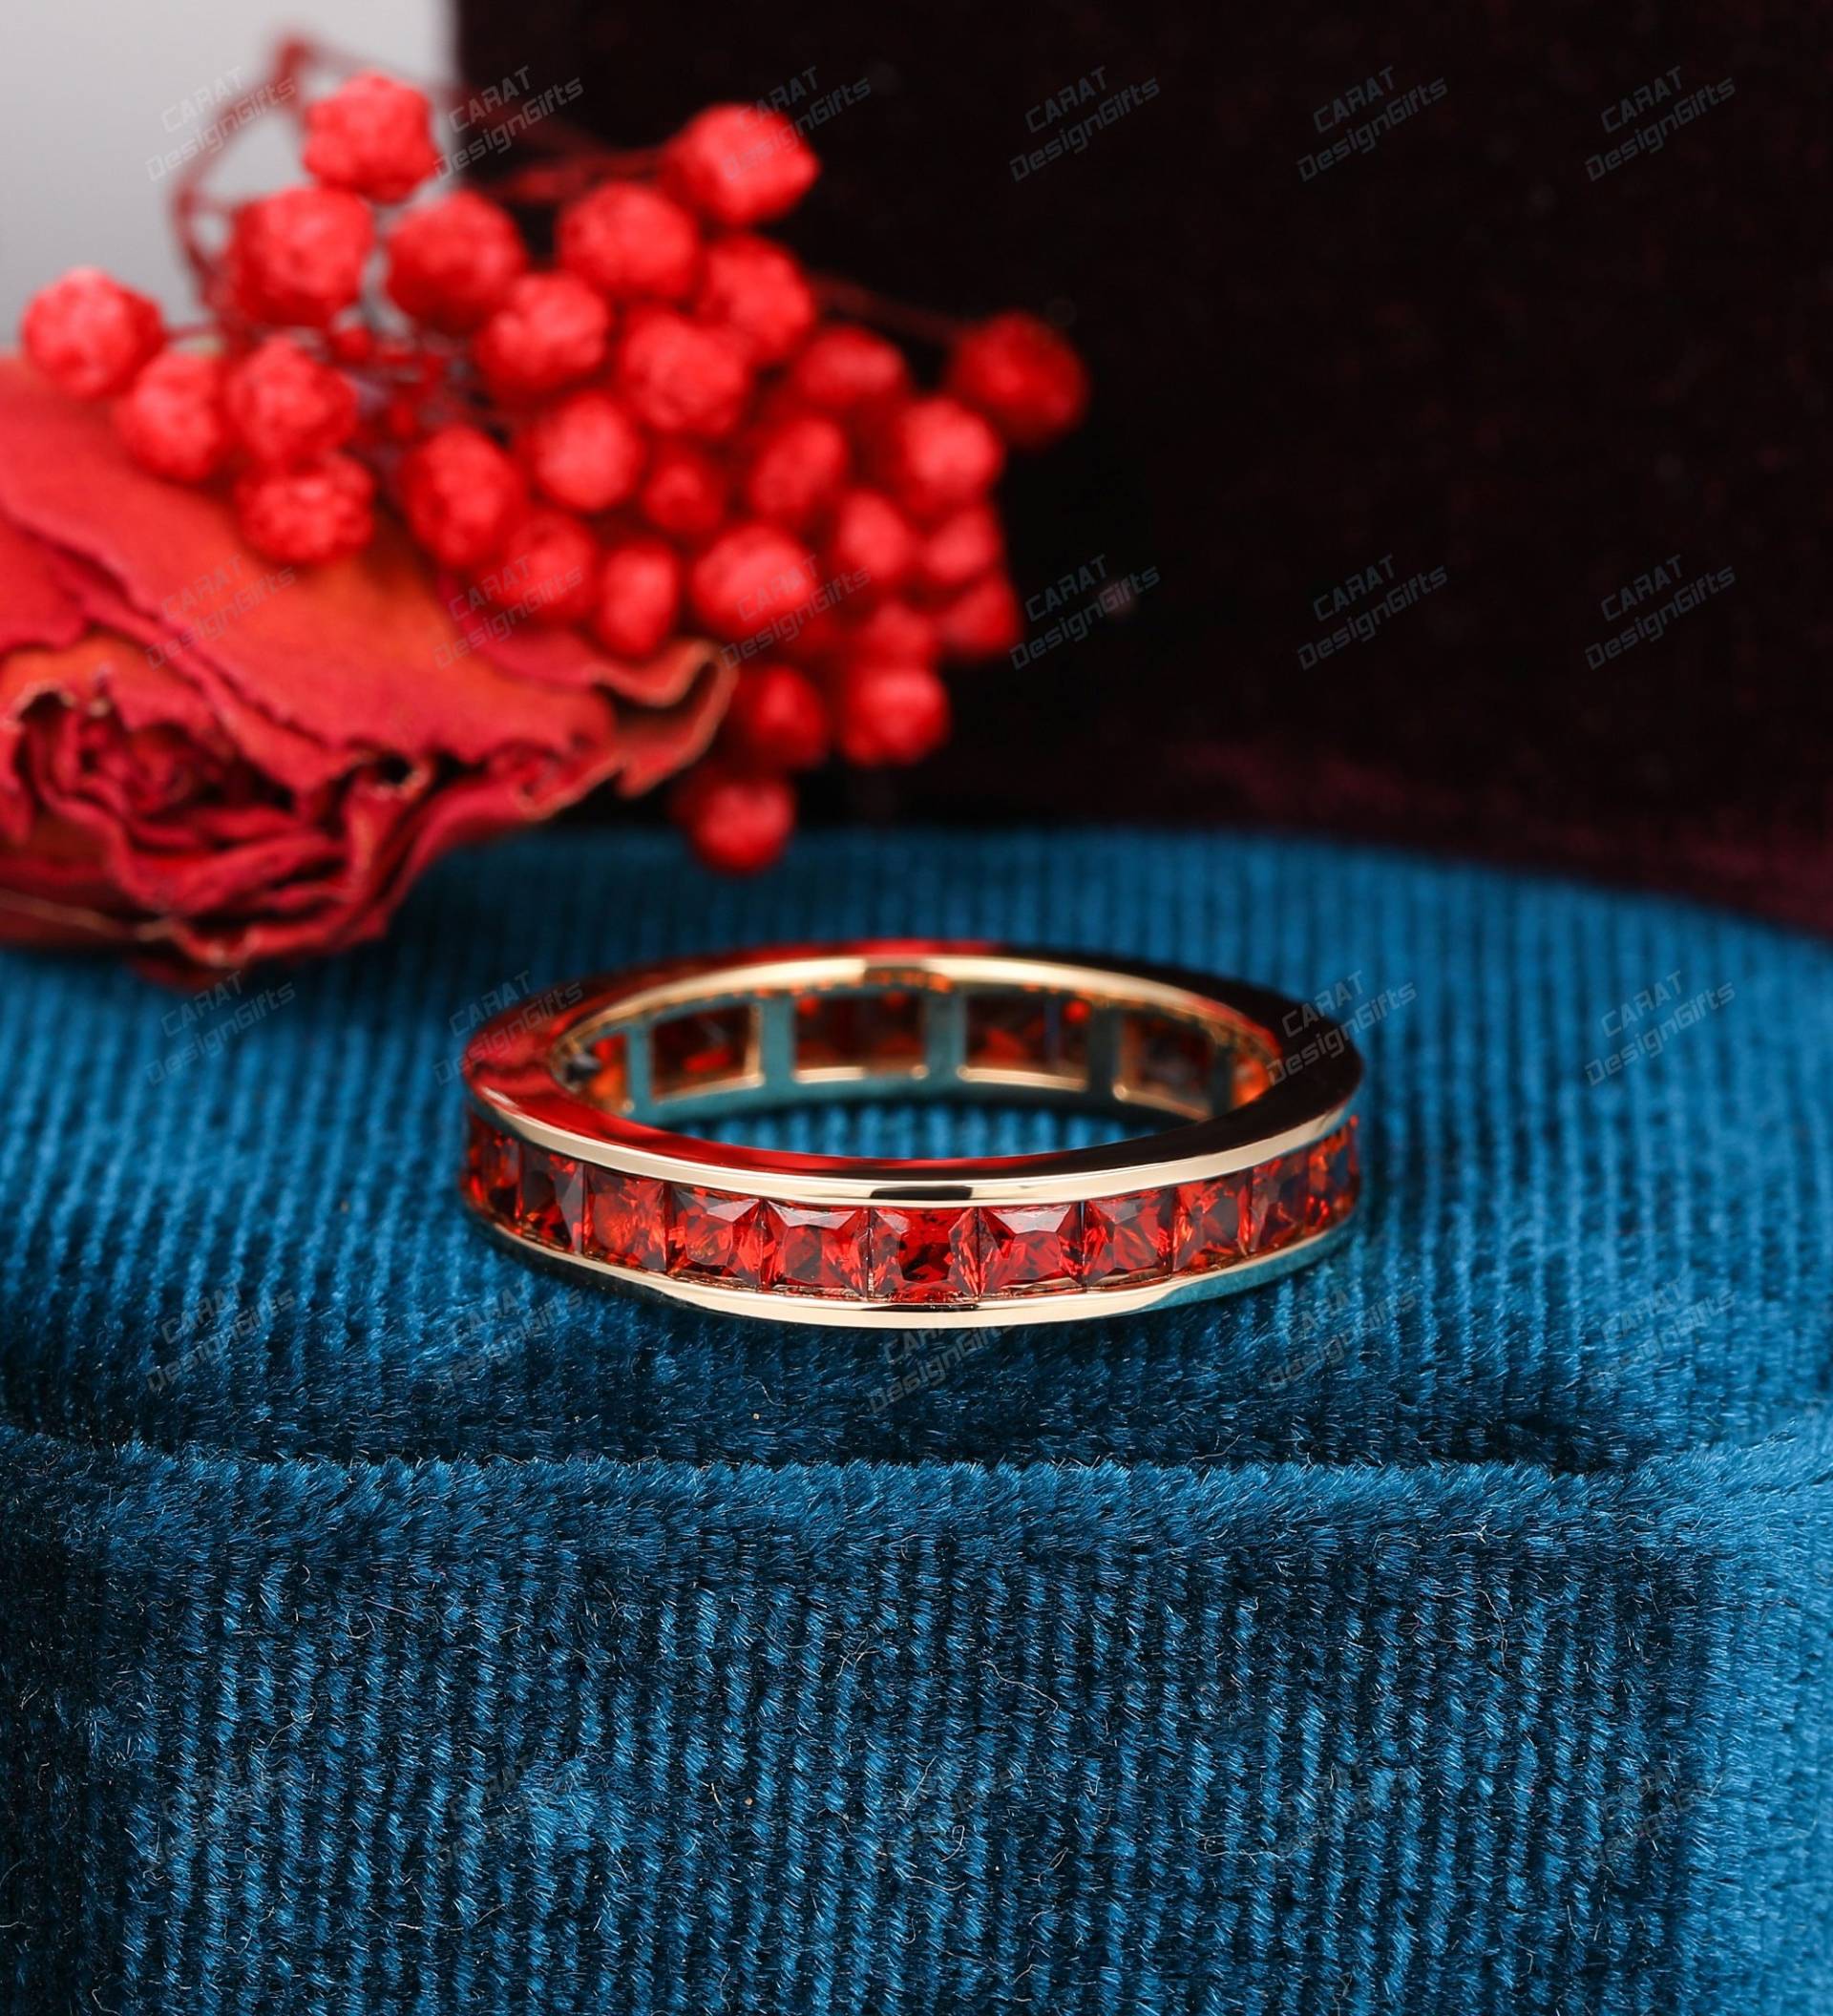 Channel Set Ring, Princess Cut Roter Granat Ehering, Solid Gold Band, Geburtsstein Stapeln Passender Ring Für Frauen von CaratDesignGifts